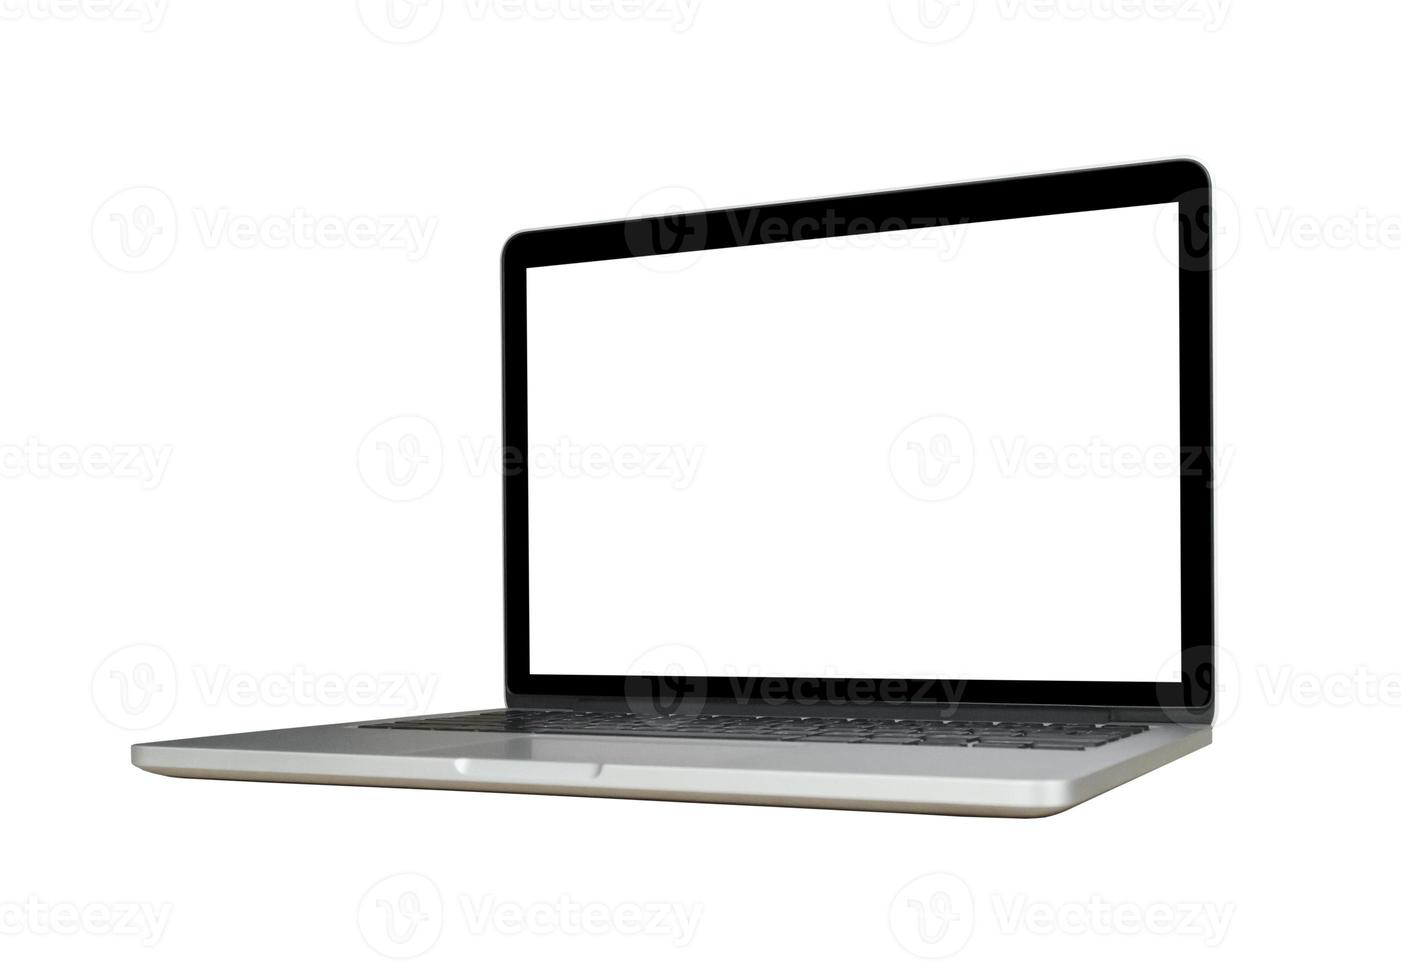 computador portátil com tela em branco isolada no fundo branco foto